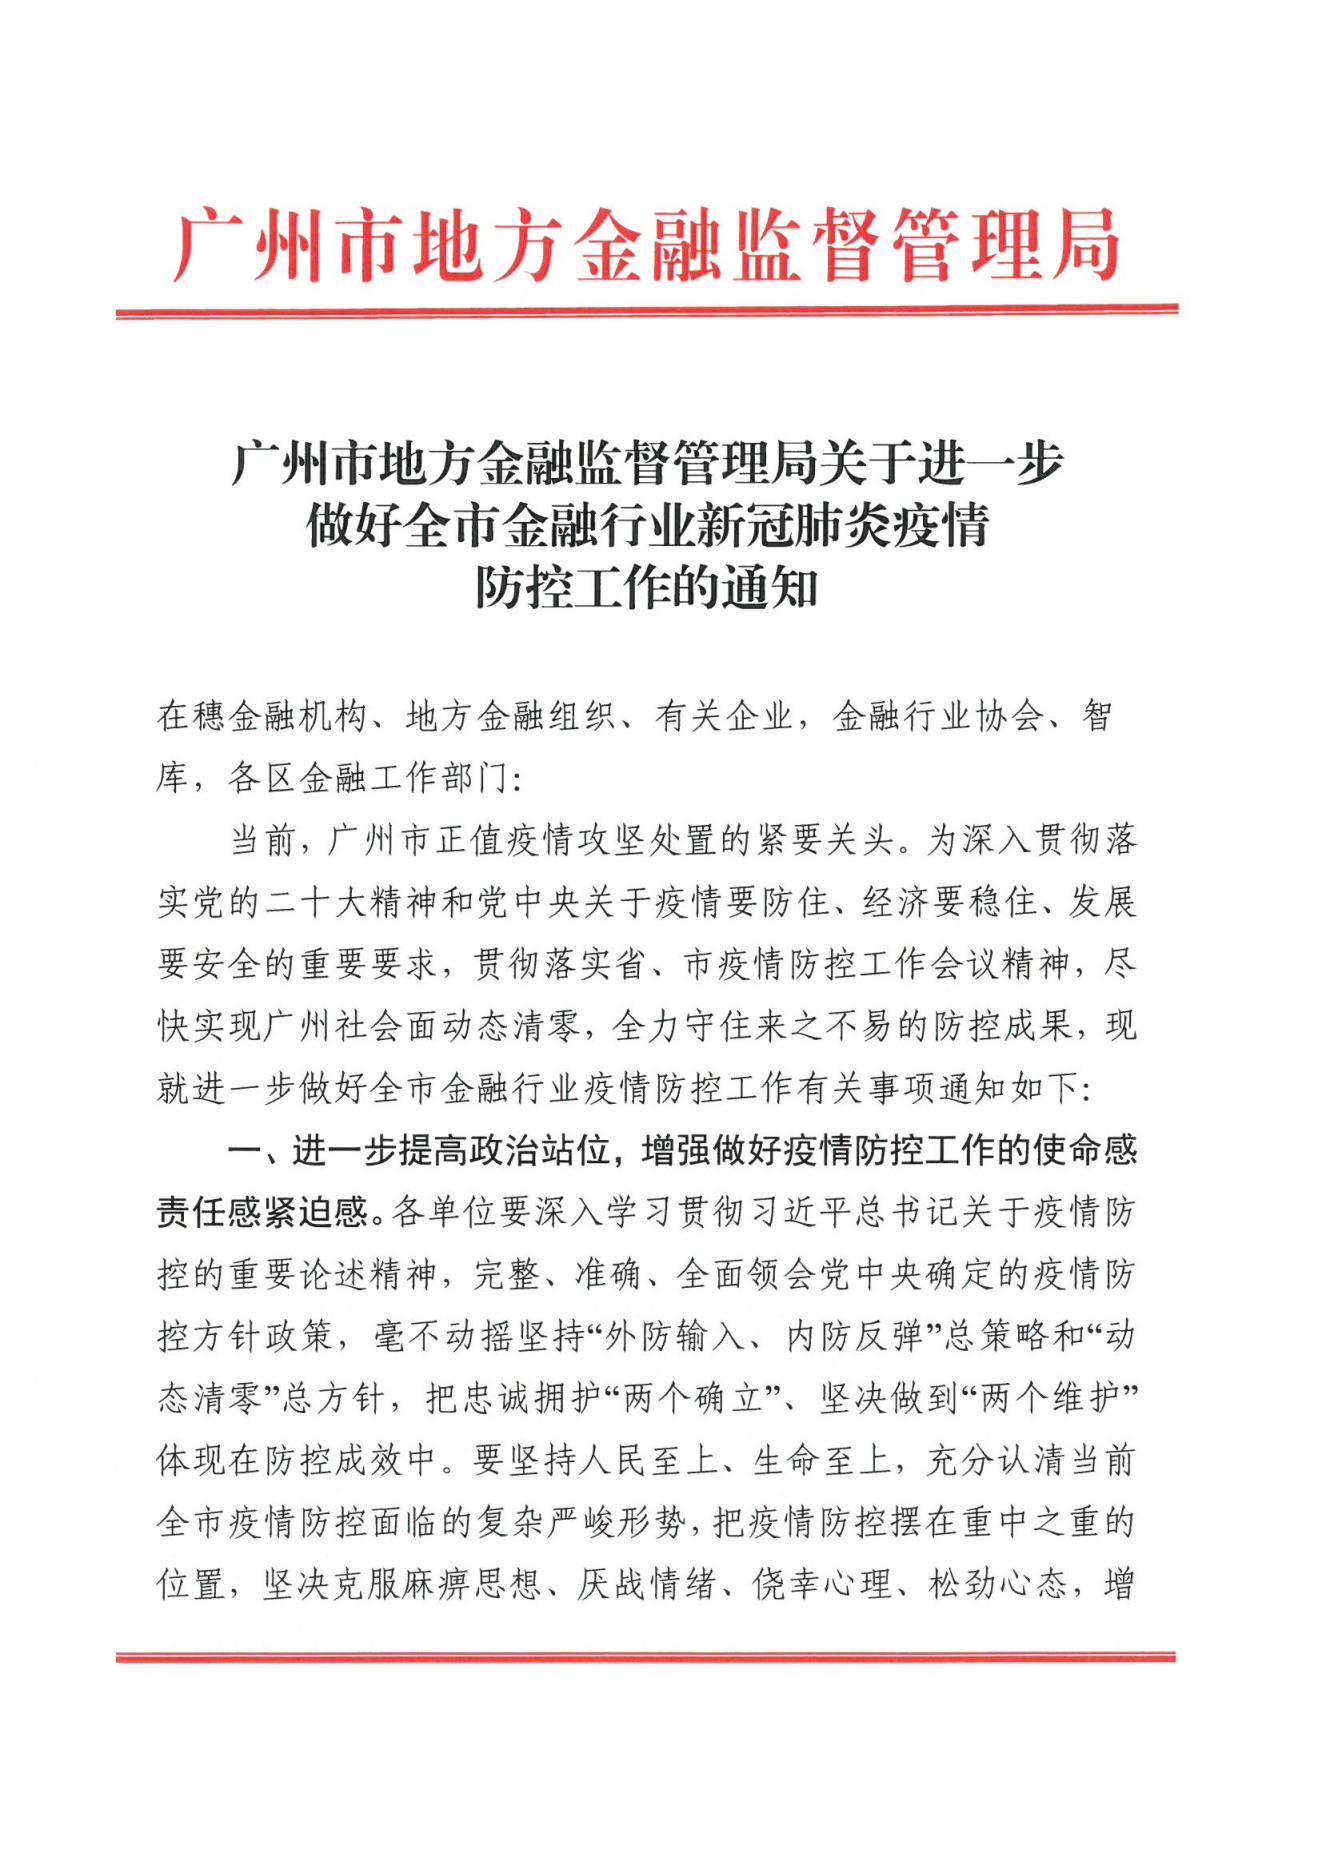 广州市地方金融监督管理局关于进一步做好全市金融行业新冠肺炎疫情防控工作的通知(1)(1)(1)_00.jpg